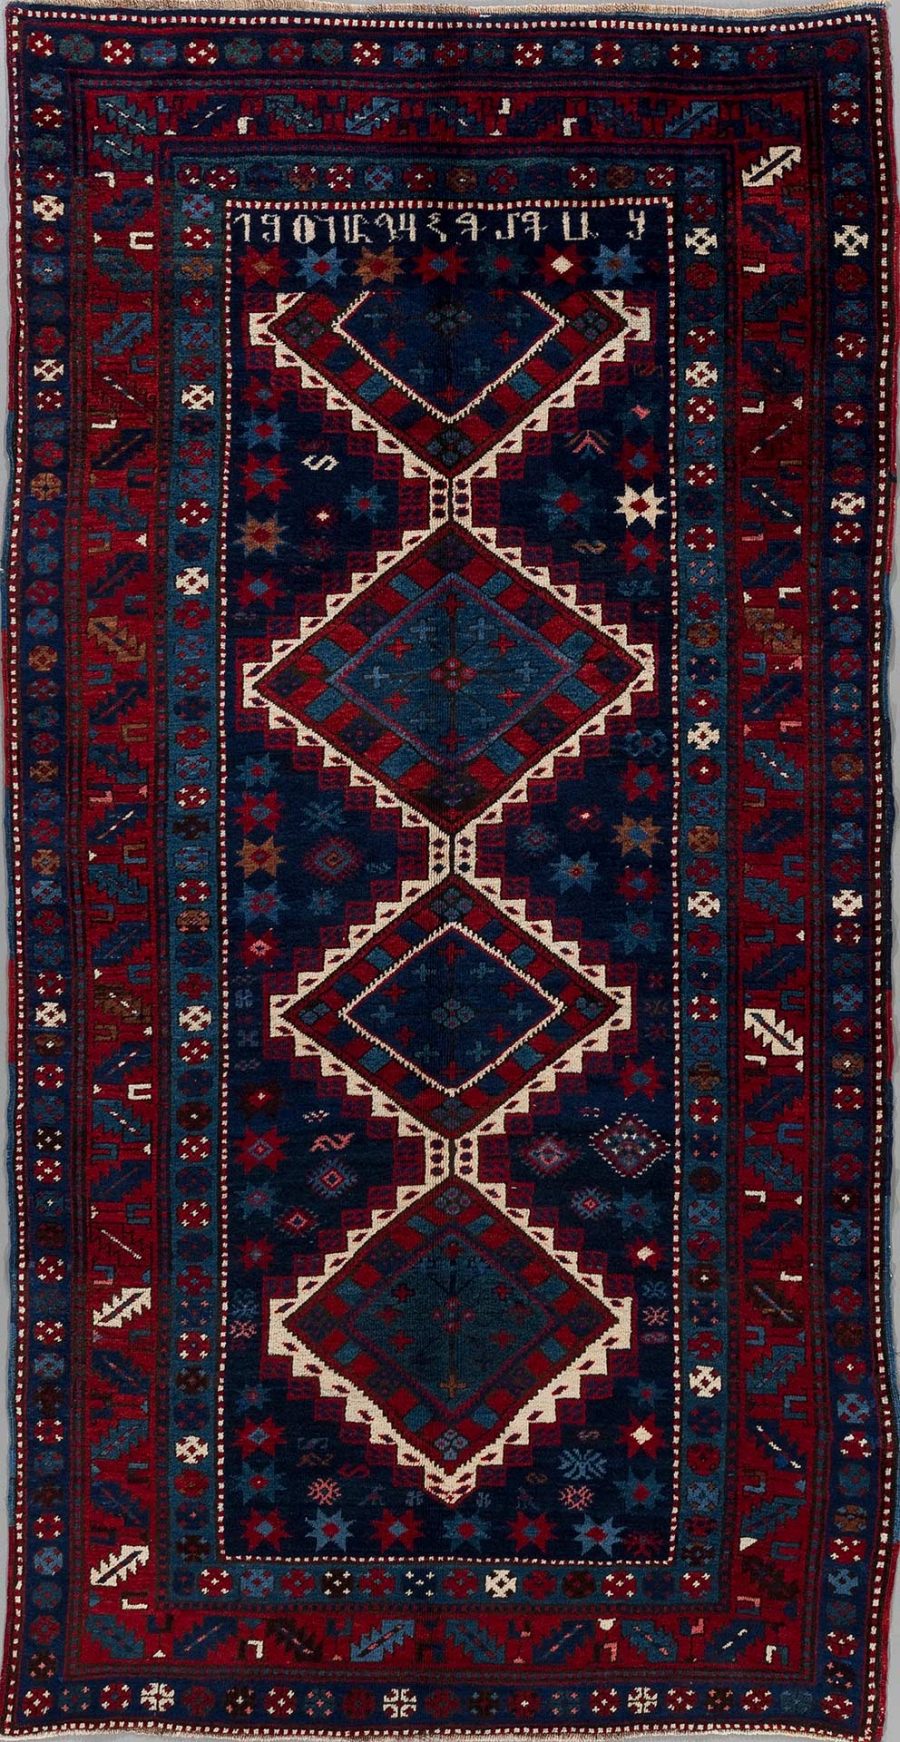 Traditioneller handgeknüpfter Teppich mit komplexem Muster in überwiegenden Farben von Blau und Rot, umrandet von Bordüren mit geometrischen und symbolartigen Motiven. Drei große verbundene Diamantformen zieren die Mitte, umgeben von kleineren dekorativen Elementen und Sternen.